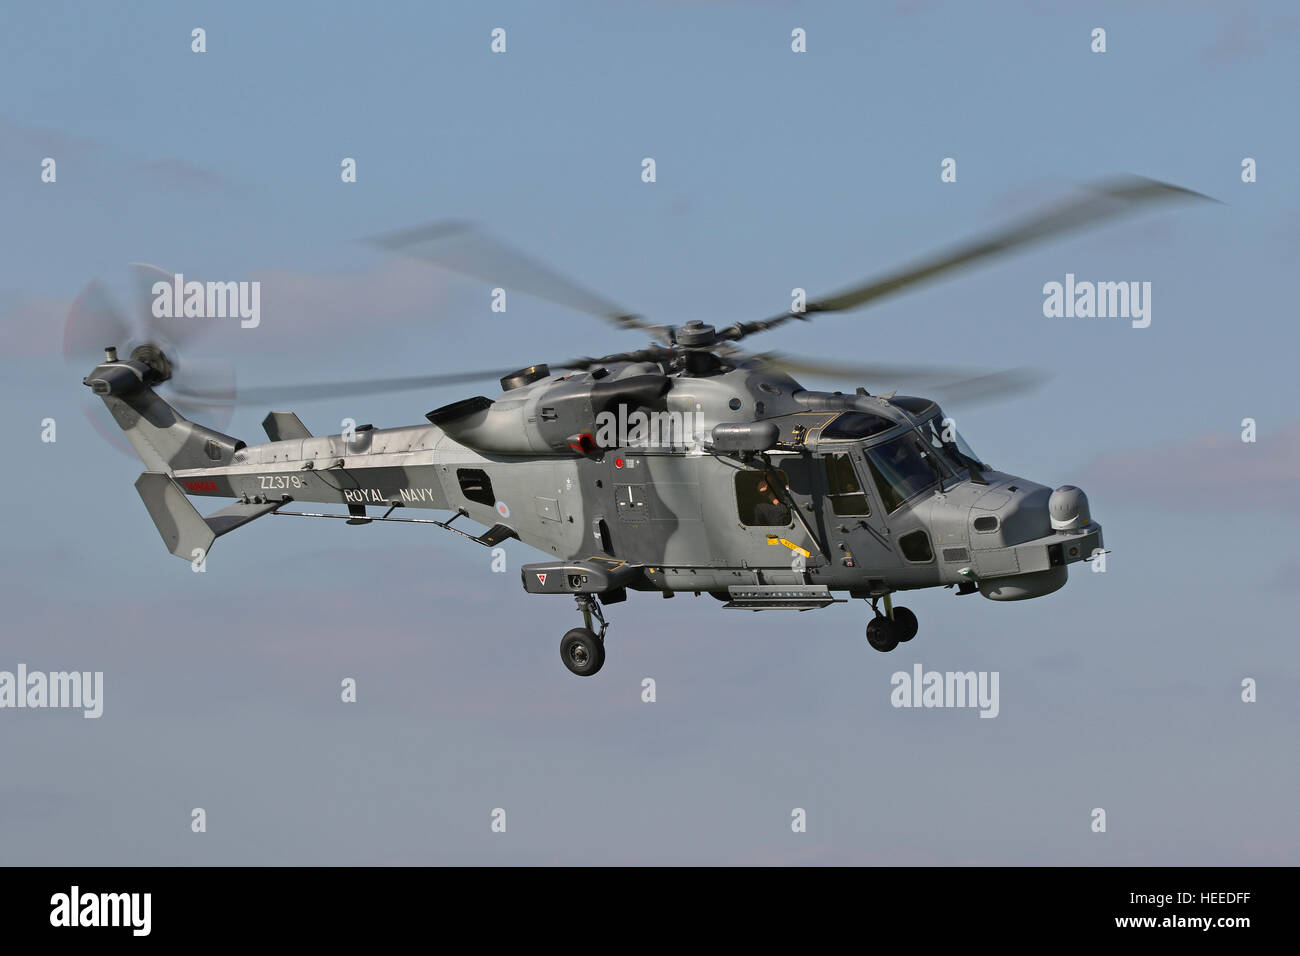 Aw 159 Luchs Wildkatze hma 2 Hubschrauber zz 379 der Royal Navy, der Luchs Wildkatze ersetzt die lynx Hma 8 in Rn-Service. Stockfoto